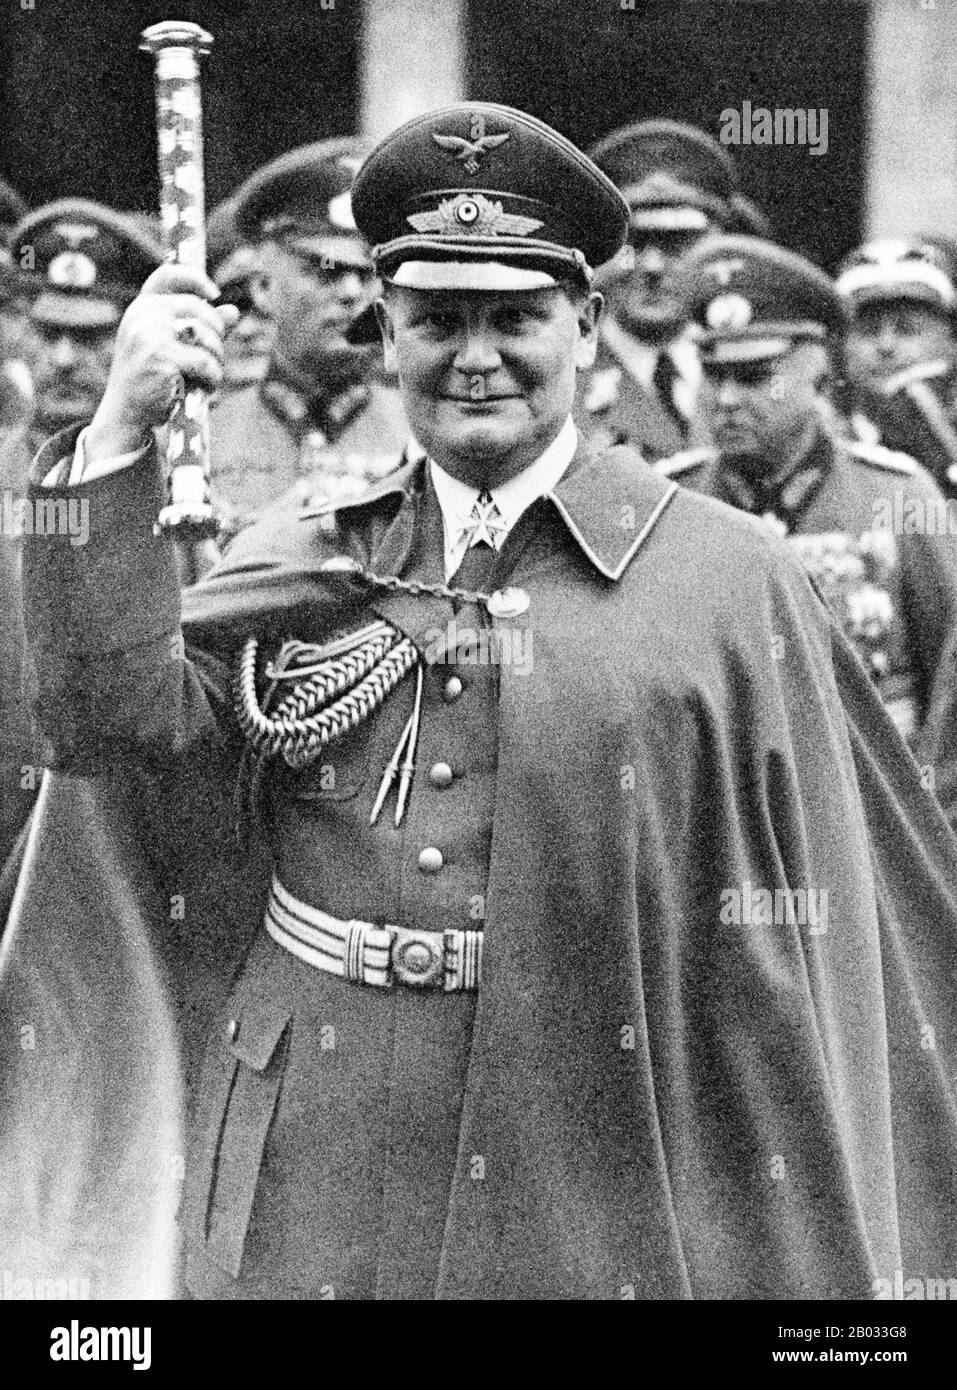 Hermann Wilhelm Göring (* 12. Januar 1893 in Berlin; † 15. Oktober 1946) war ein deutscher Politiker, Militärführer und führendes Mitglied der NS-Partei (Nazi-Partei). Nachdem er Adolf Hitler 1933 bei der Machtübernahme geholfen hatte, wurde er der zweitmächtigste Mann in Deutschland. Er gründete 1933 die Gestapo und gab später das Kommando an Heinrich Himmler ab. Göring wurde 1935 zum Oberbefehlshaber der Luftwaffe (Luftwaffe) ernannt, eine Position, die er bis in die letzten Tage des zweiten Weltkriegs innehatte Nach dem zweiten Weltkrieg wurde Göring bei den Nürnberger Prozessen wegen Kriegsverbrechen und Verbrechen gegen die Menschlichkeit verurteilt. Er wurde zum Tode verurteilt B. Stockfoto